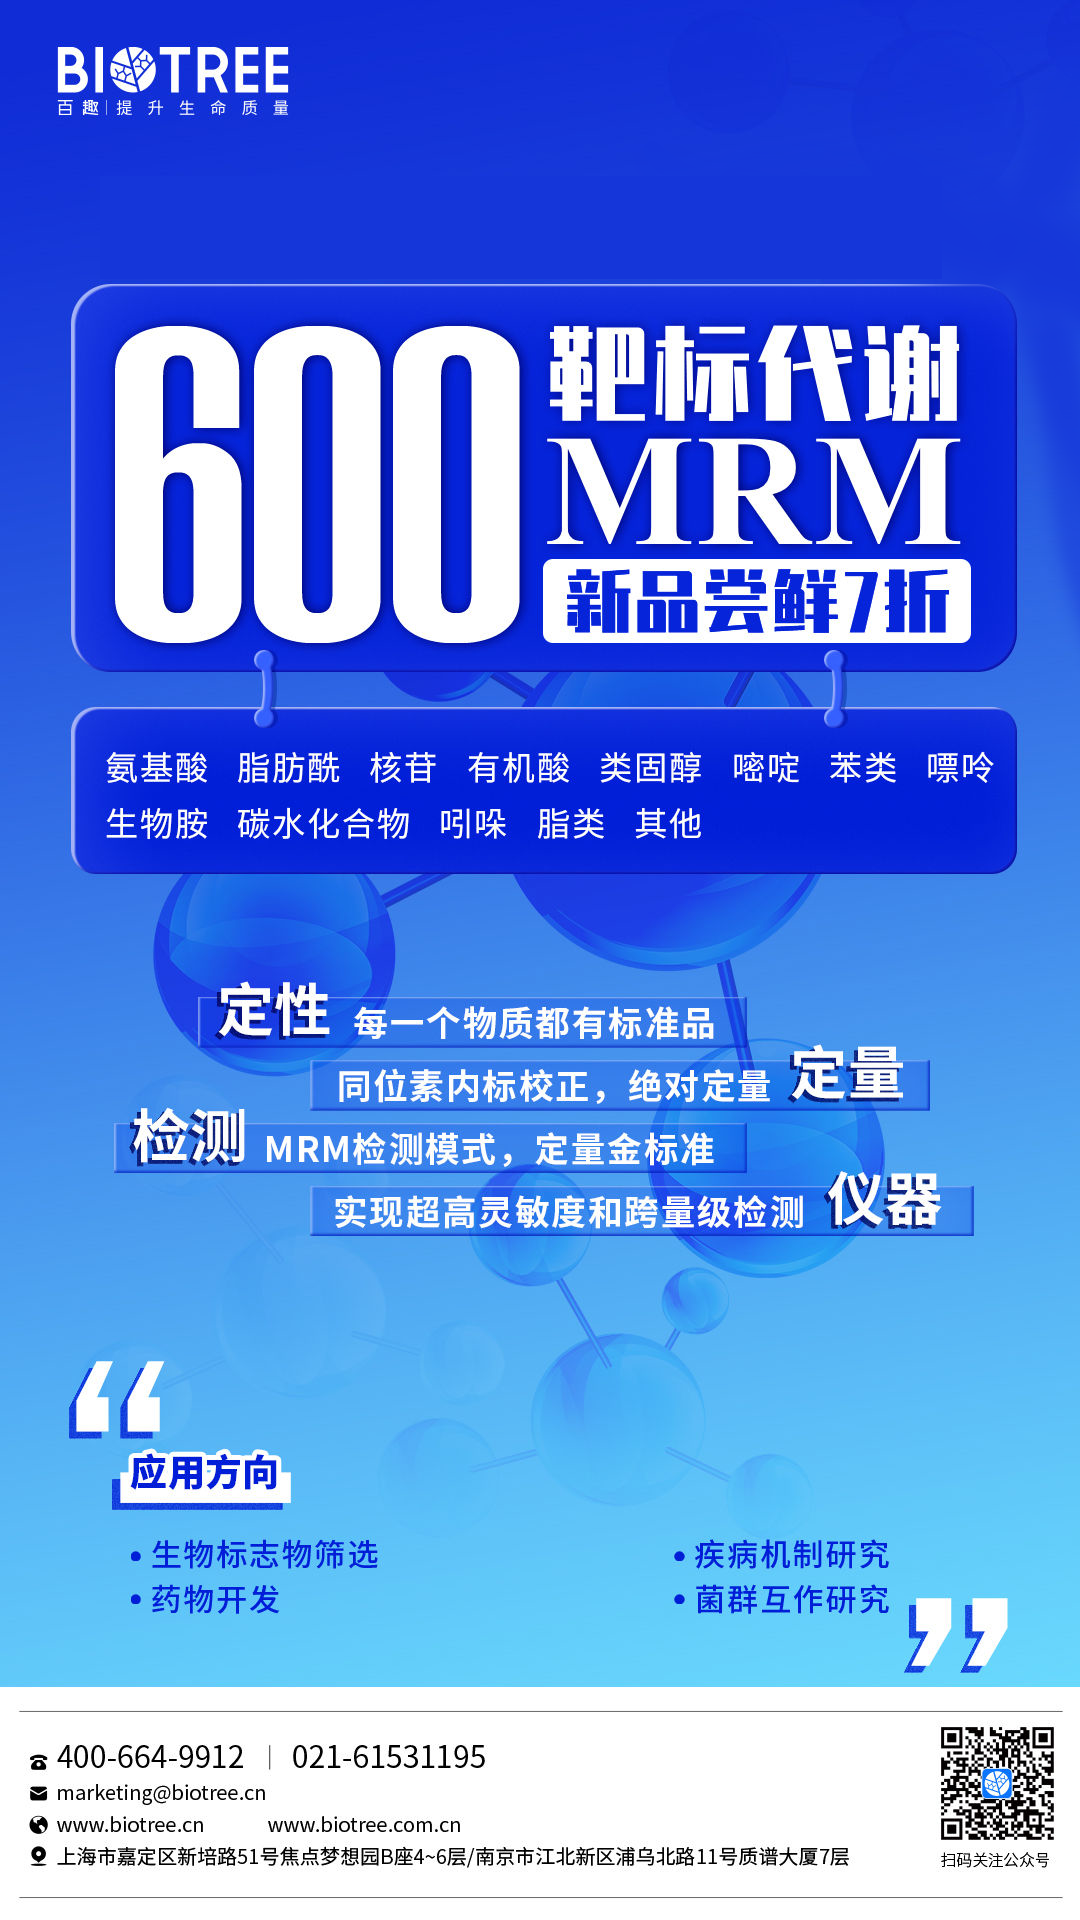 上海百趣600MRM高通量靶标代谢产品发布